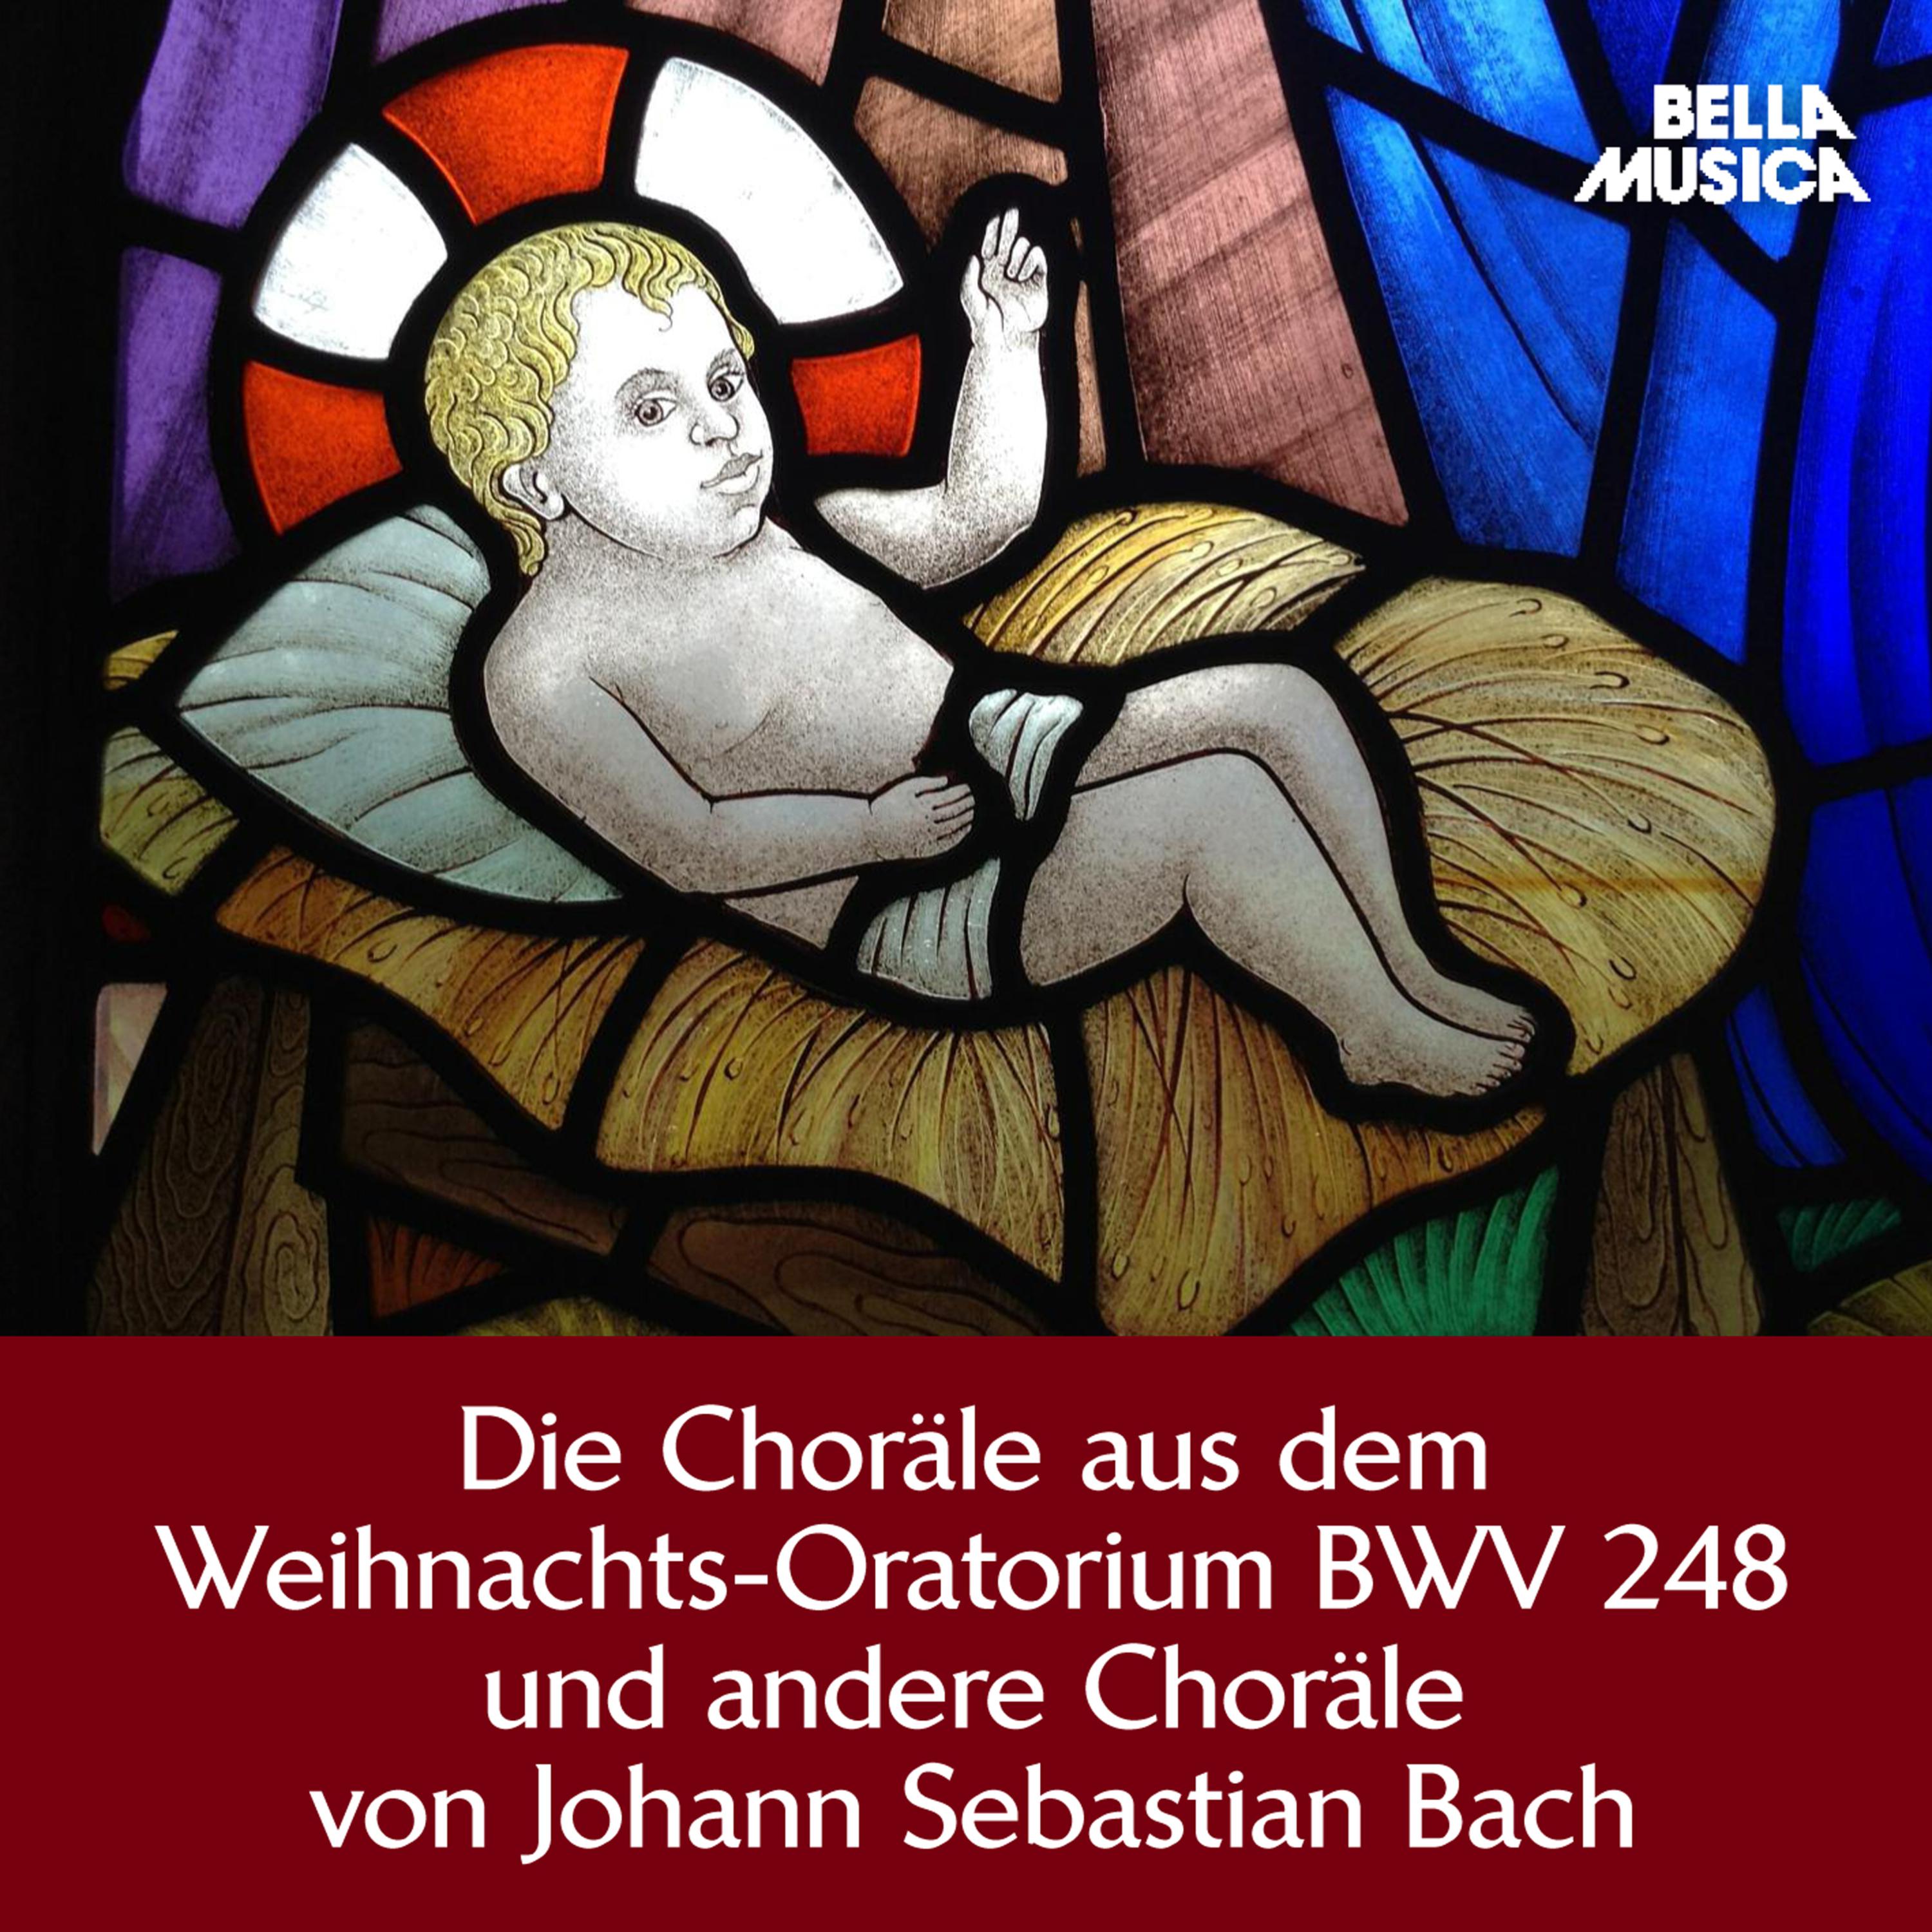 Weihnachts-Oratorium, BWV 248, Teil 5, Am Sonntage nach dem Neuer Jahr: Ehre sei dir, Gott, gesungen